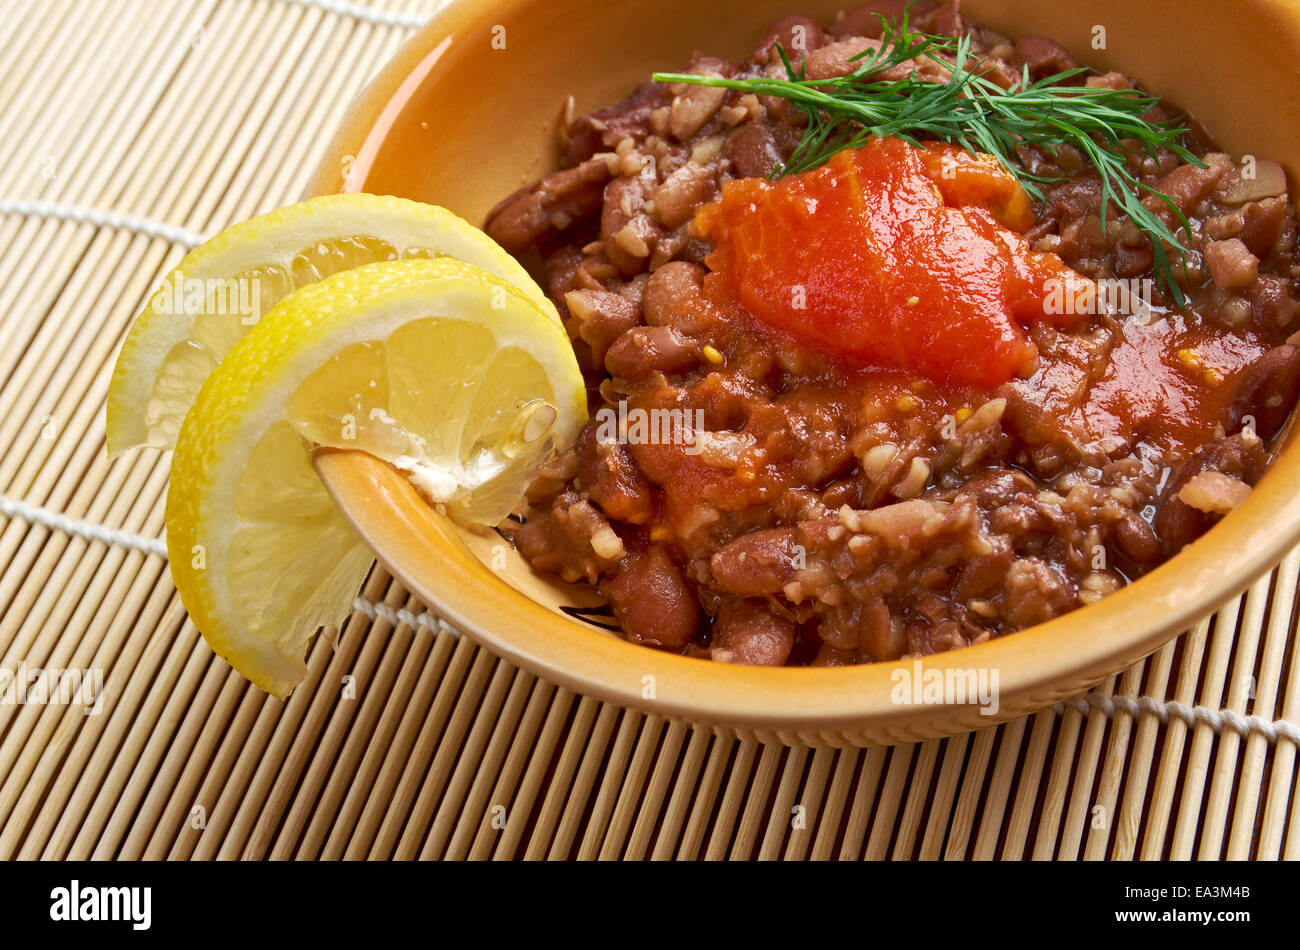 Sudanesisches Essen Stockfotos und -bilder Kaufen - Alamy